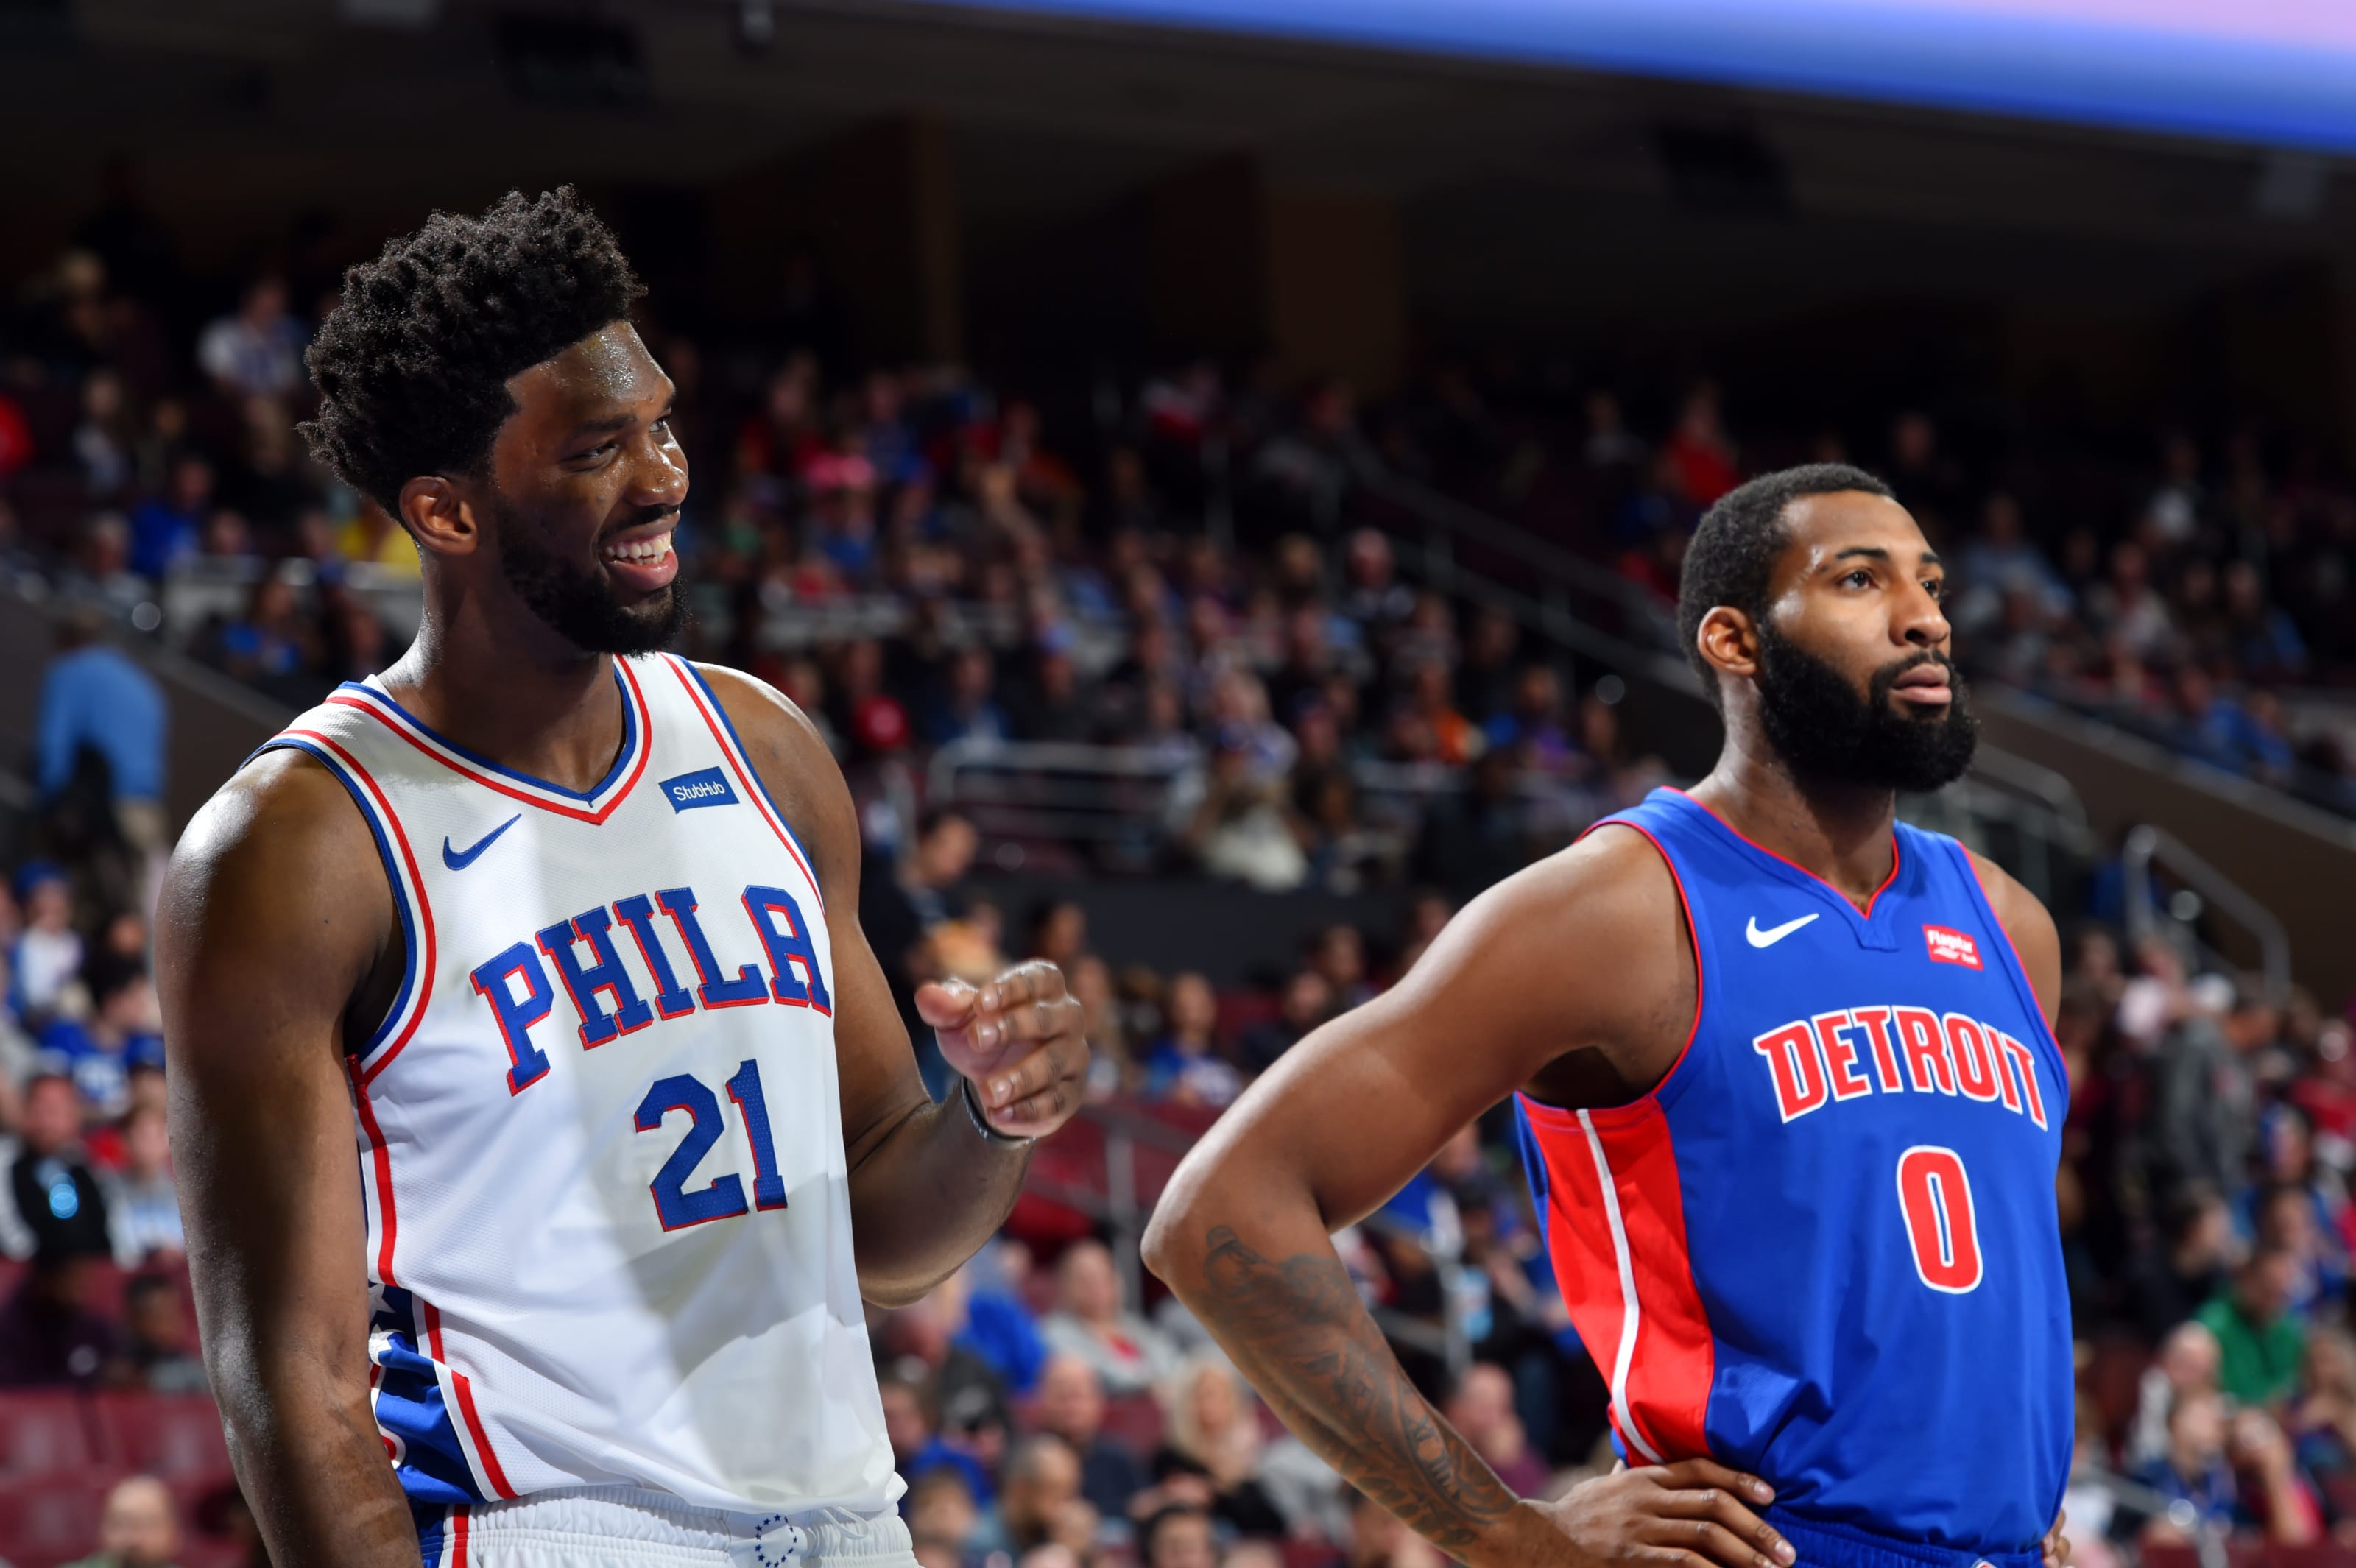 Detroit Pistons vs. Philadelphia 76ers 2019-20 season preview